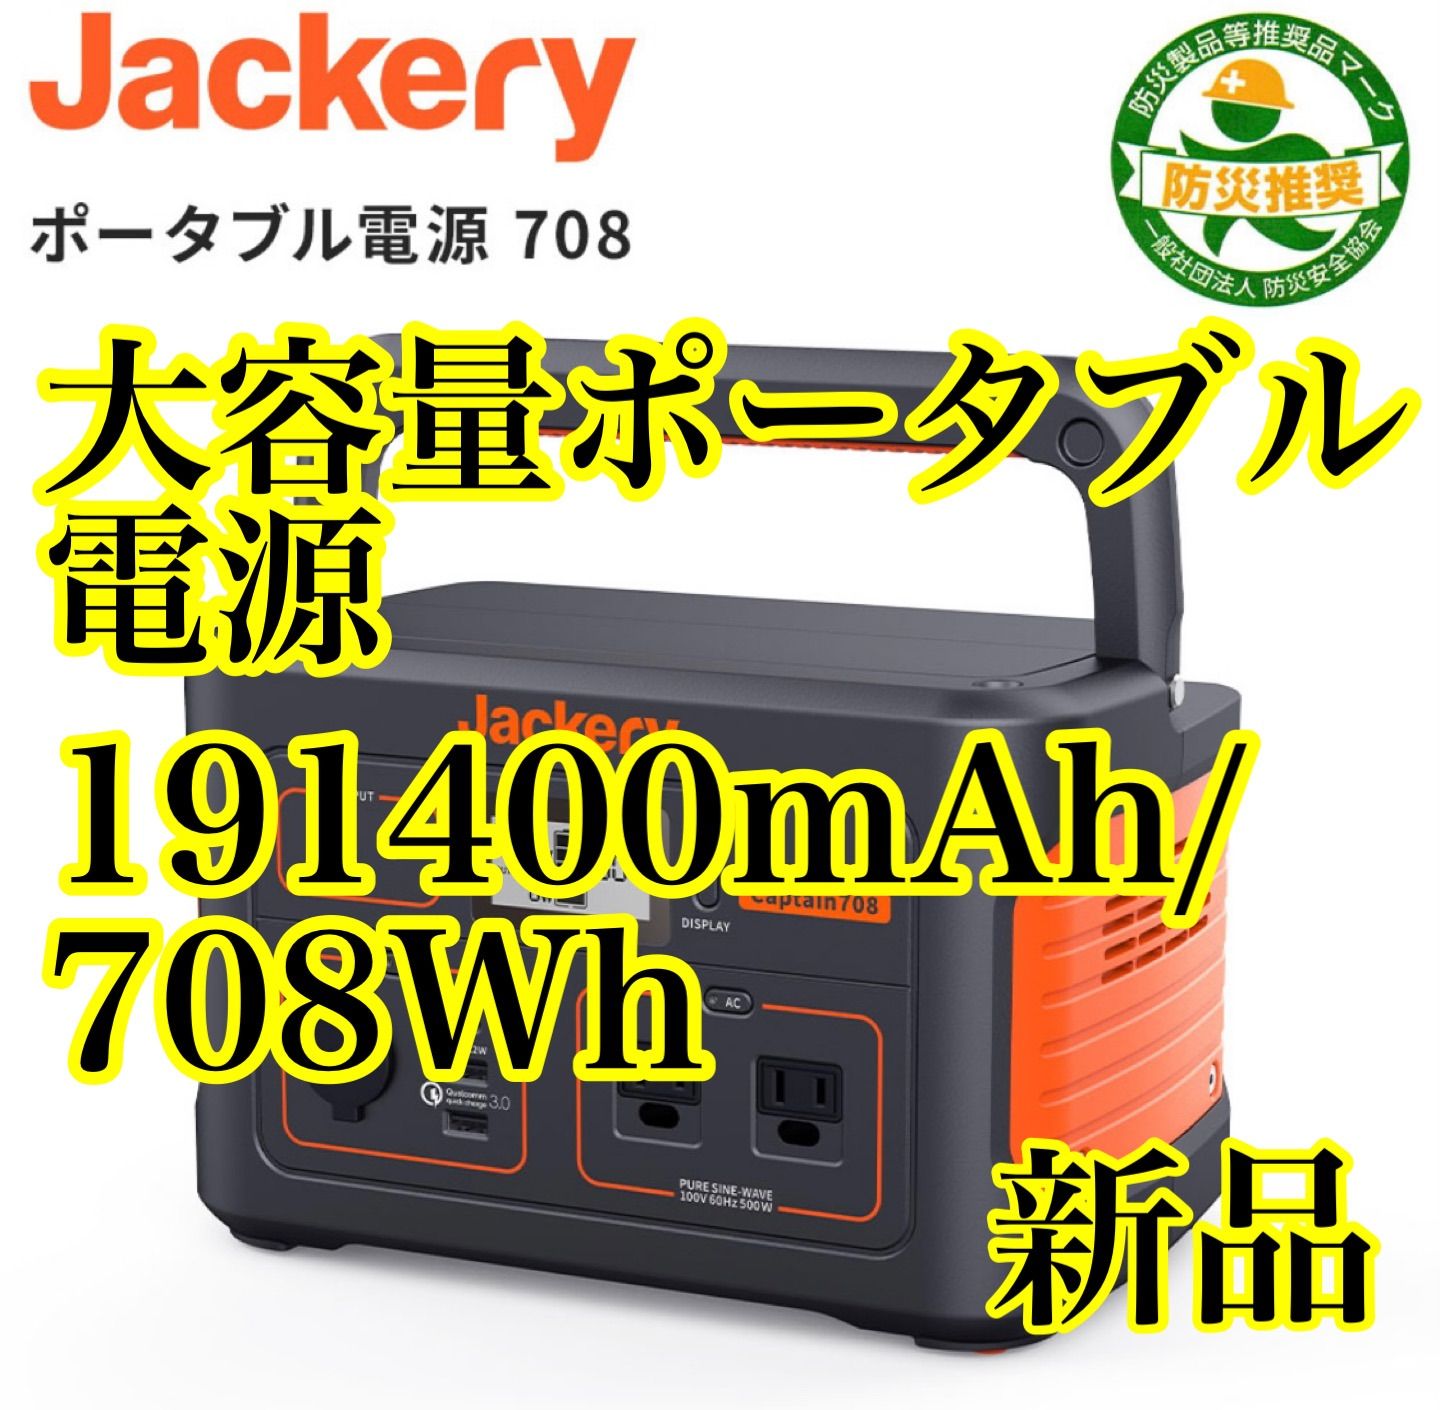 【新品未開封】Jackery ポータブル電源 708 大容量191400mAh